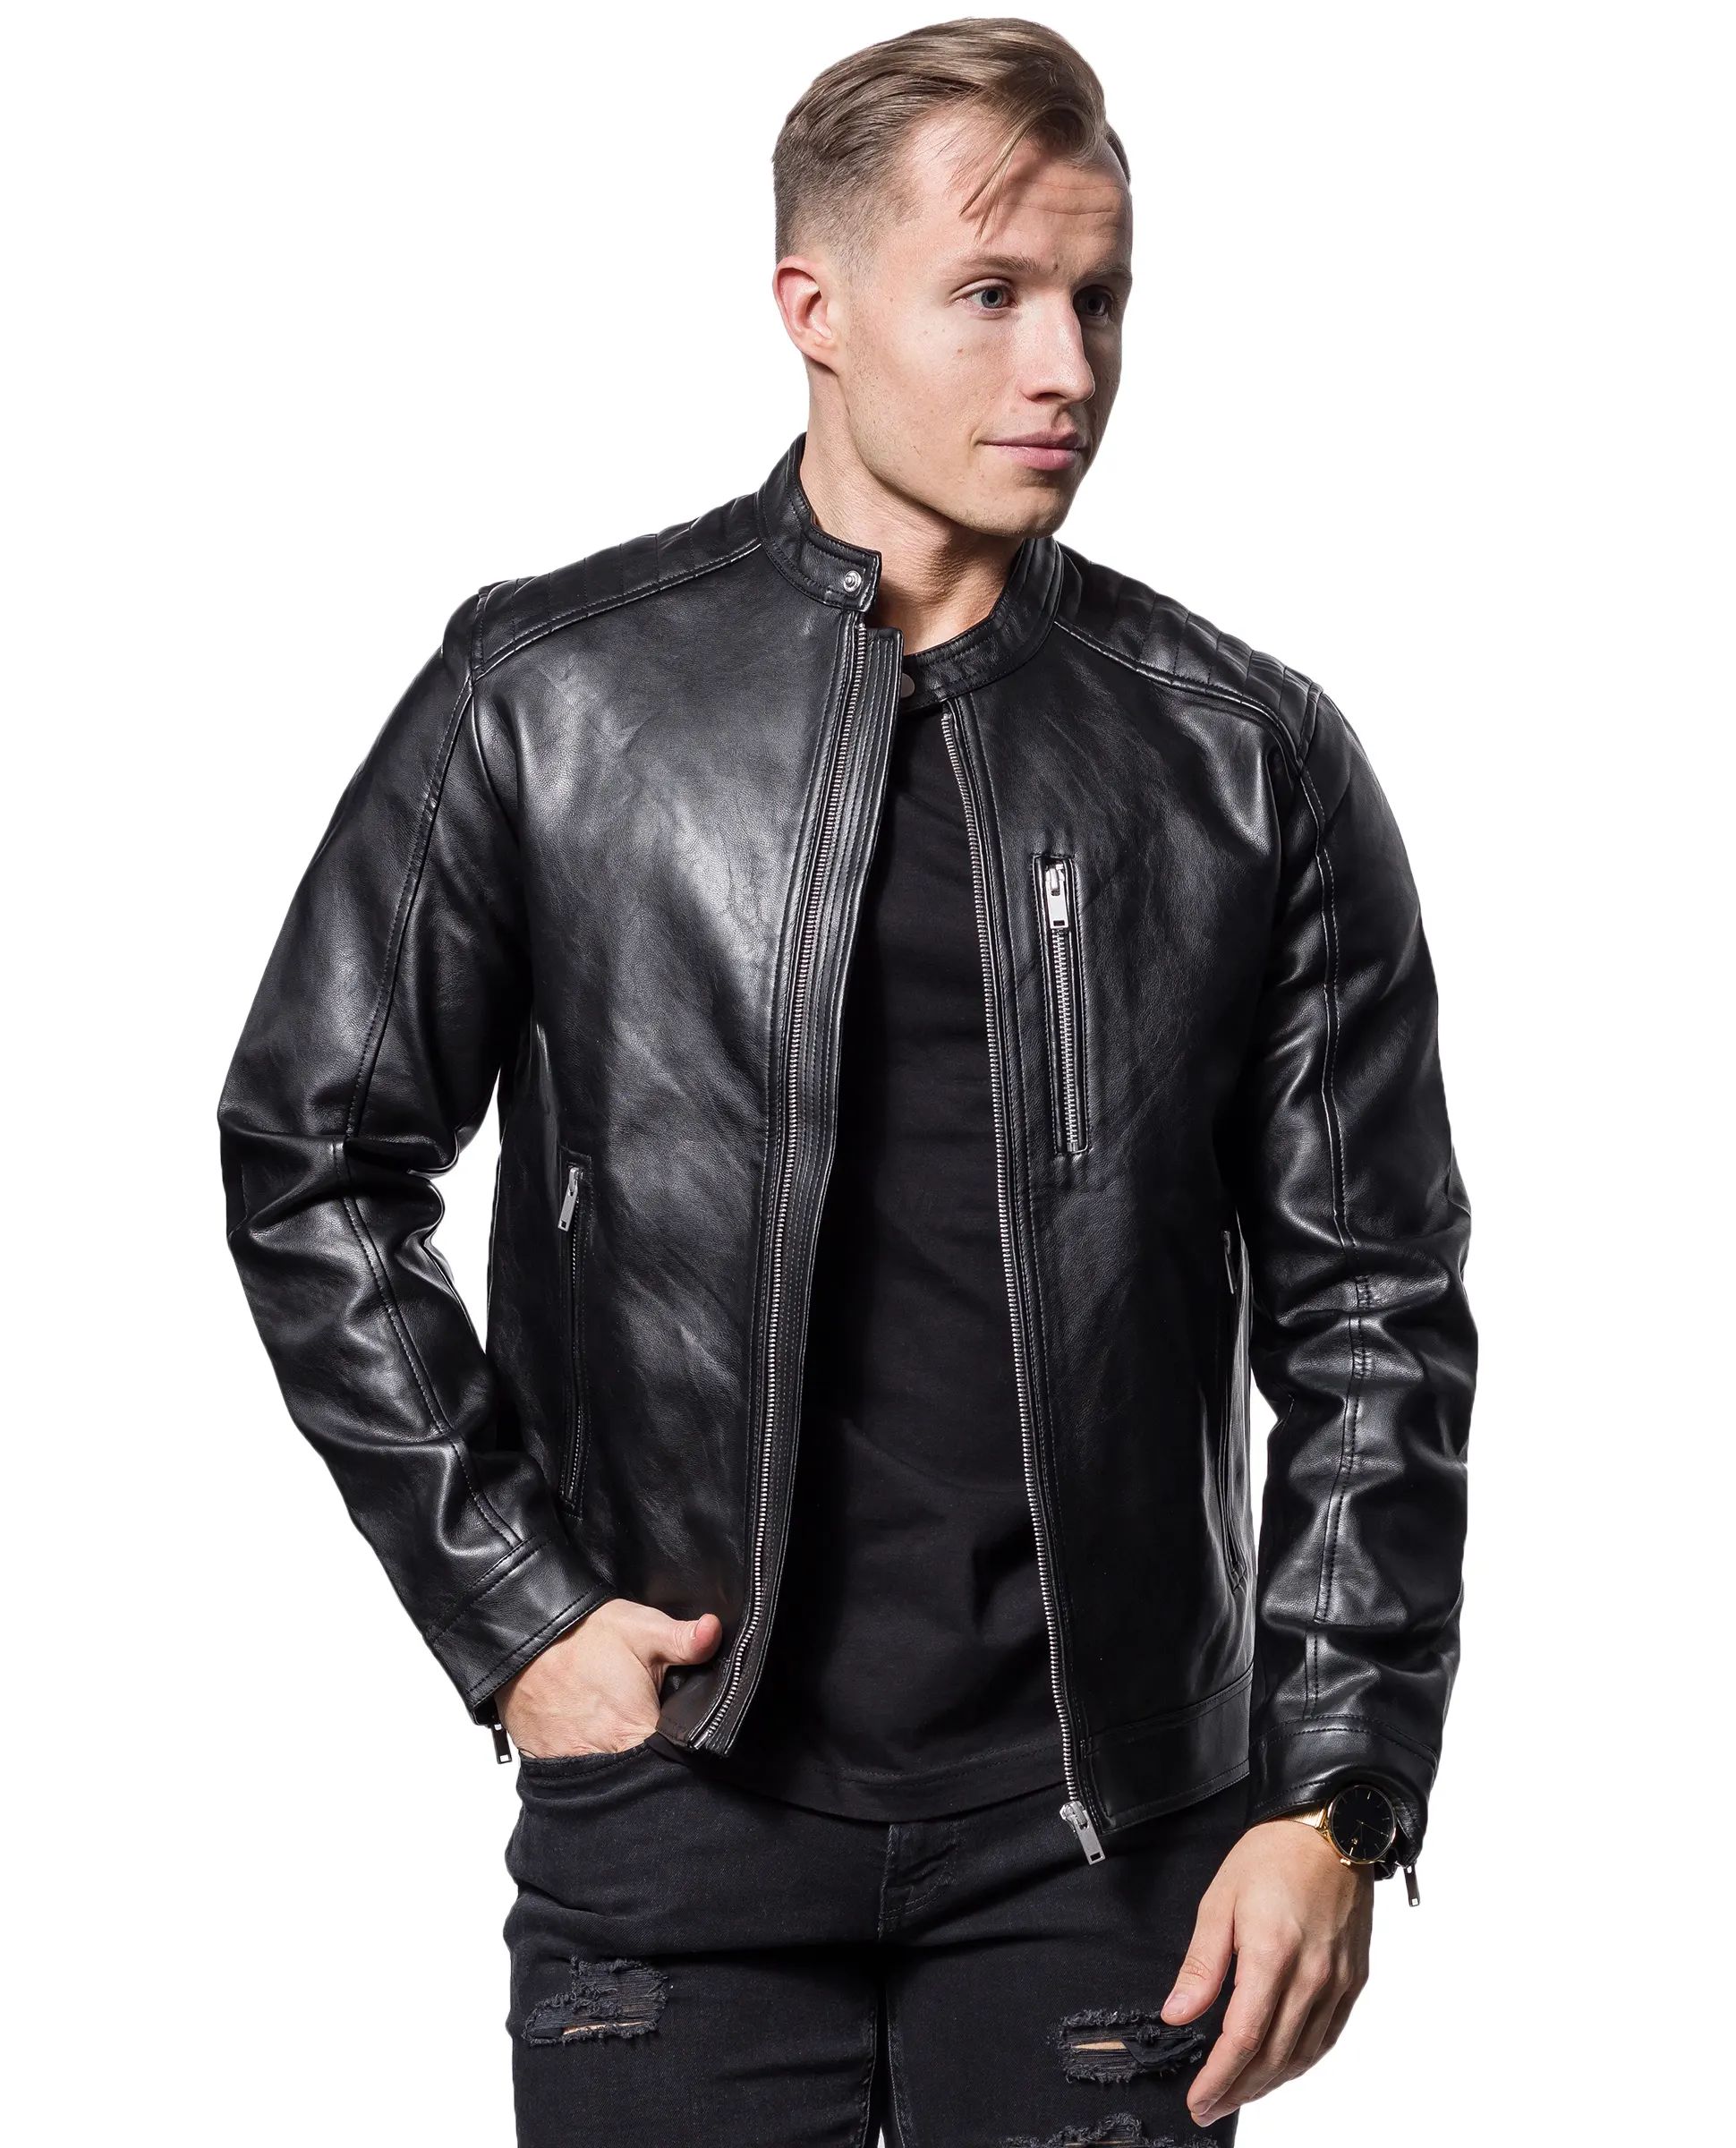 Mason Faux Leather Jacket Jack & Jones - 2345 - Leather Jackets - Jerone